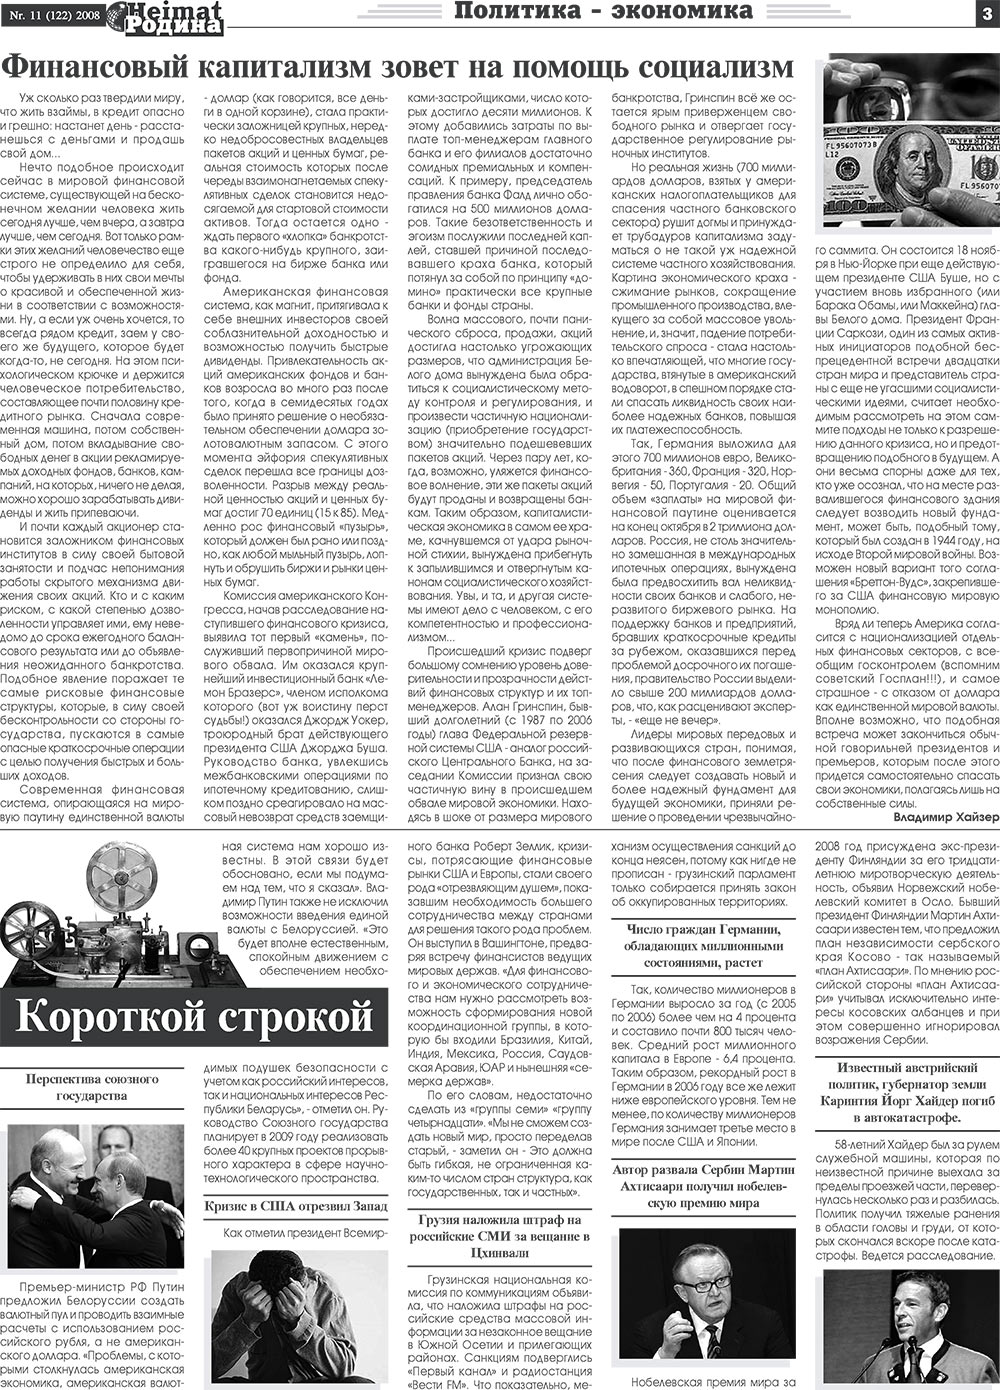 Heimat-Родина (газета). 2008 год, номер 11, стр. 3